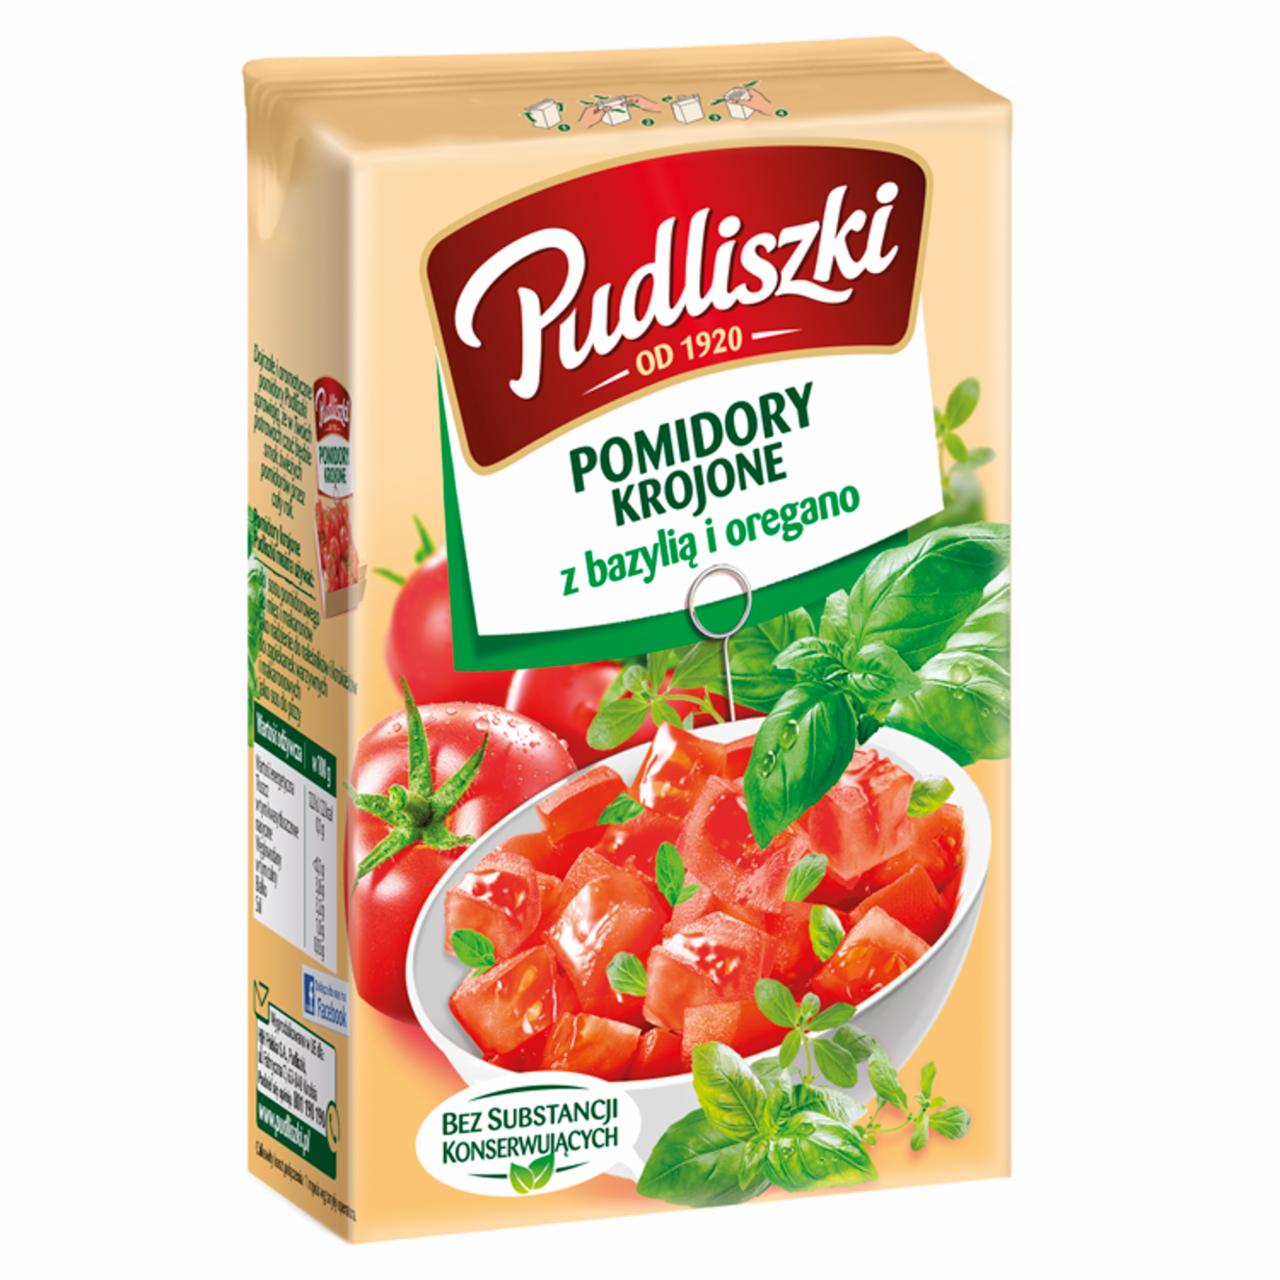 Zdjęcia - Pudliszki Pomidory krojone z bazylią i oregano 390 g